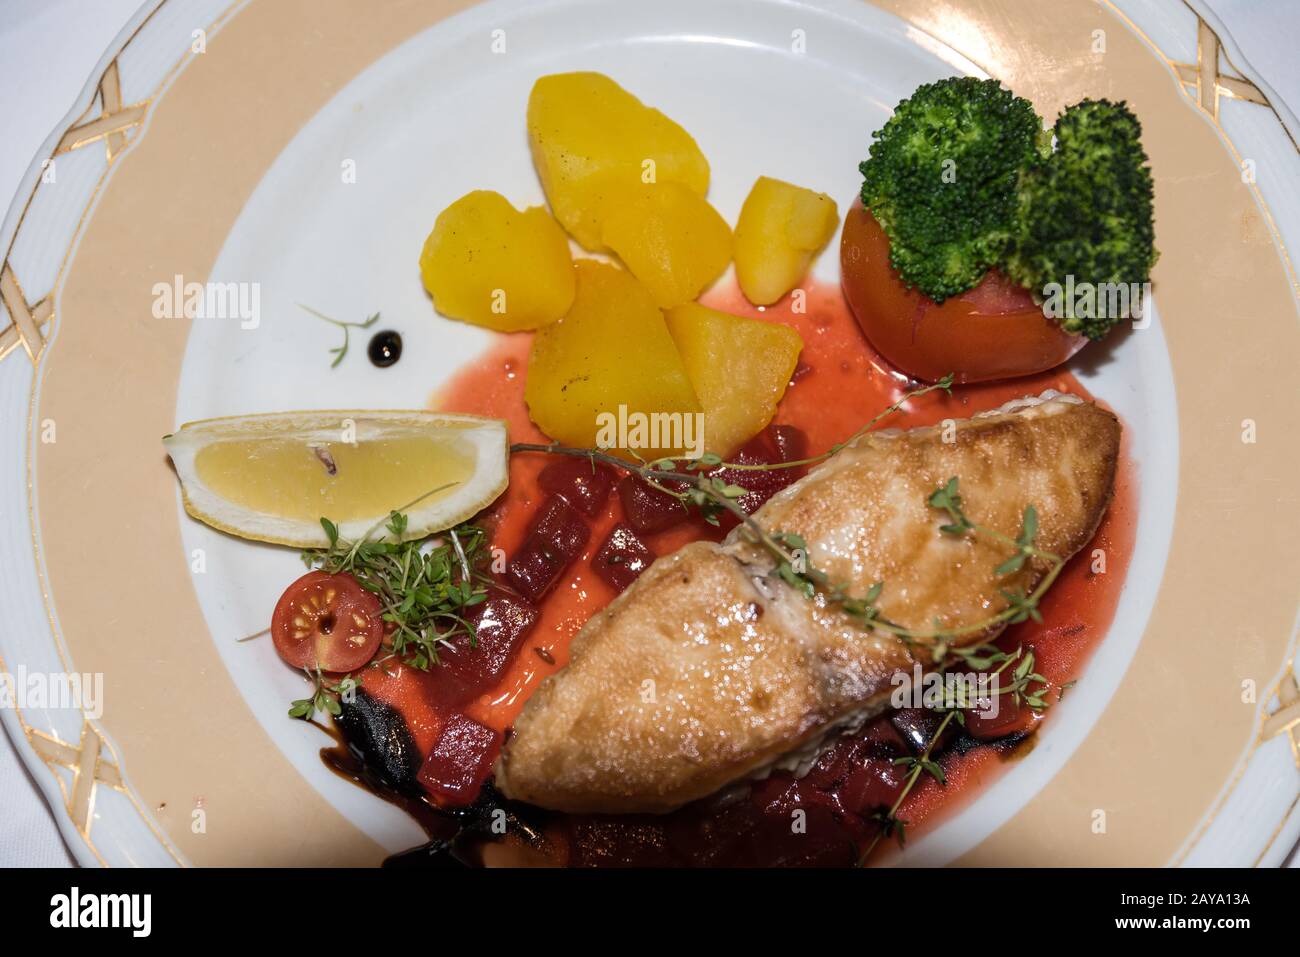 Leckeres Fischgericht - Fischfilet mit Kartoffeln und Gemüse aus der Vogelperspektive Stockfoto